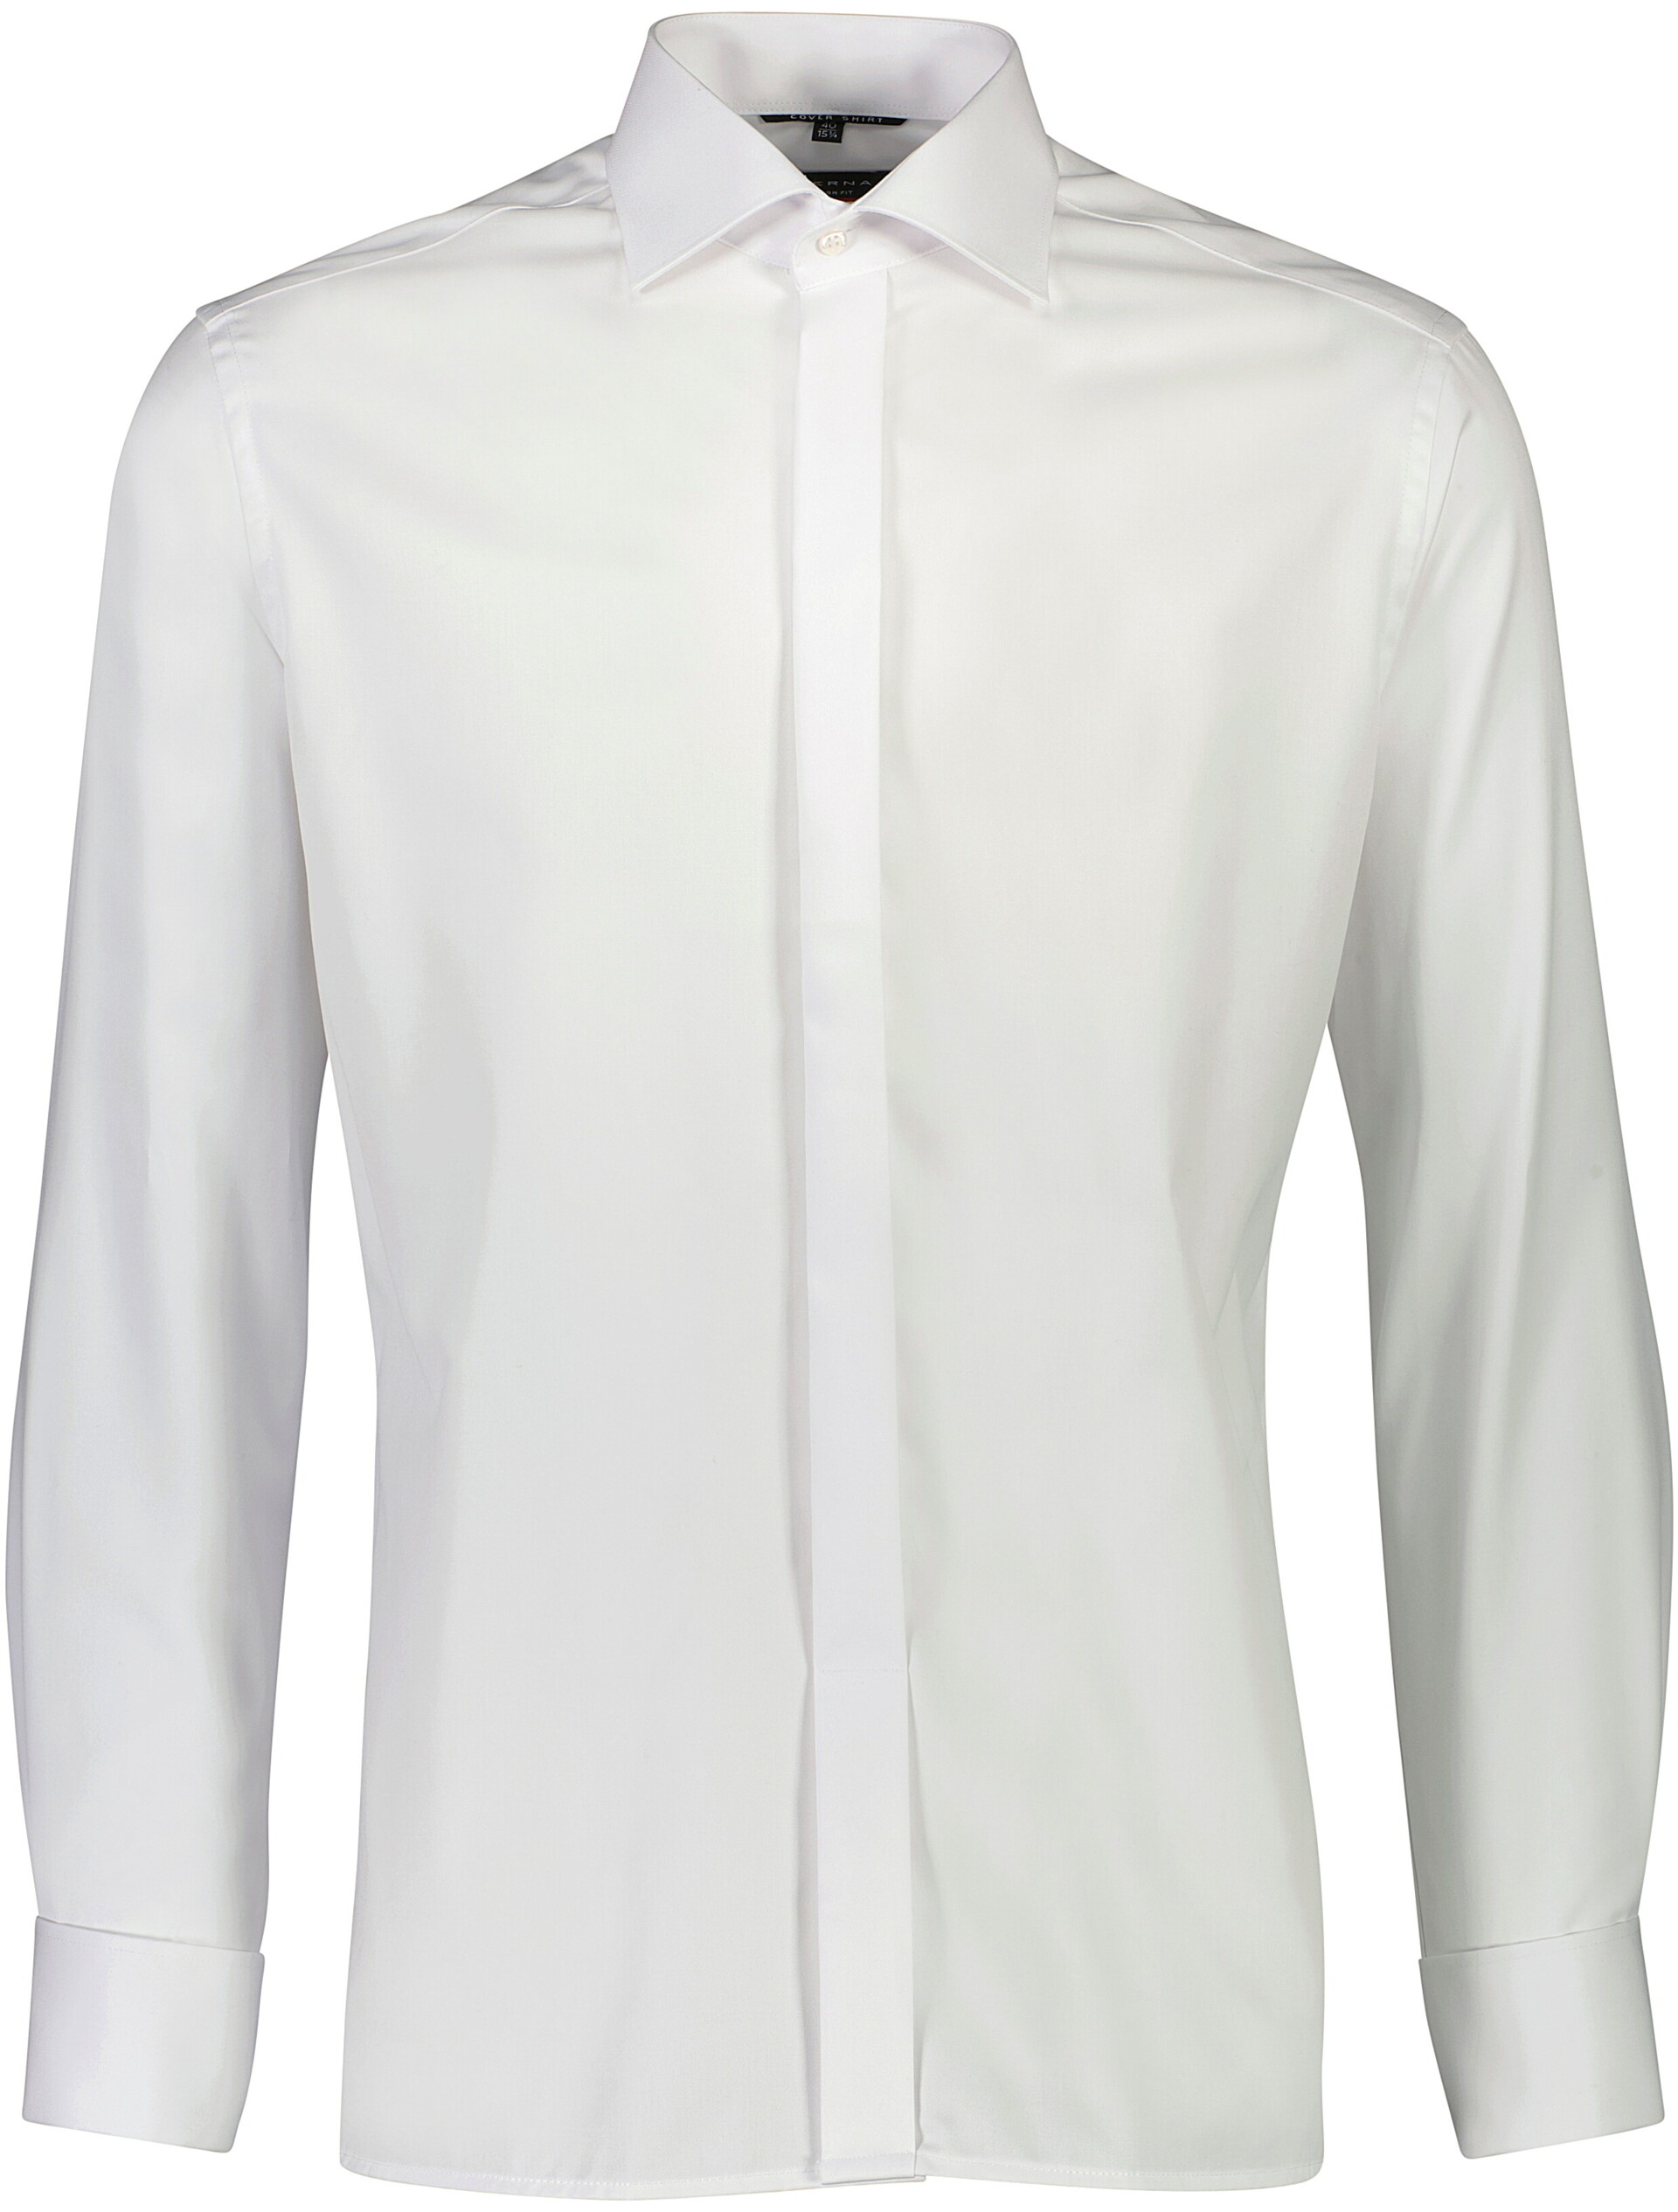 Eterna Business skjorte hvid / 0 white